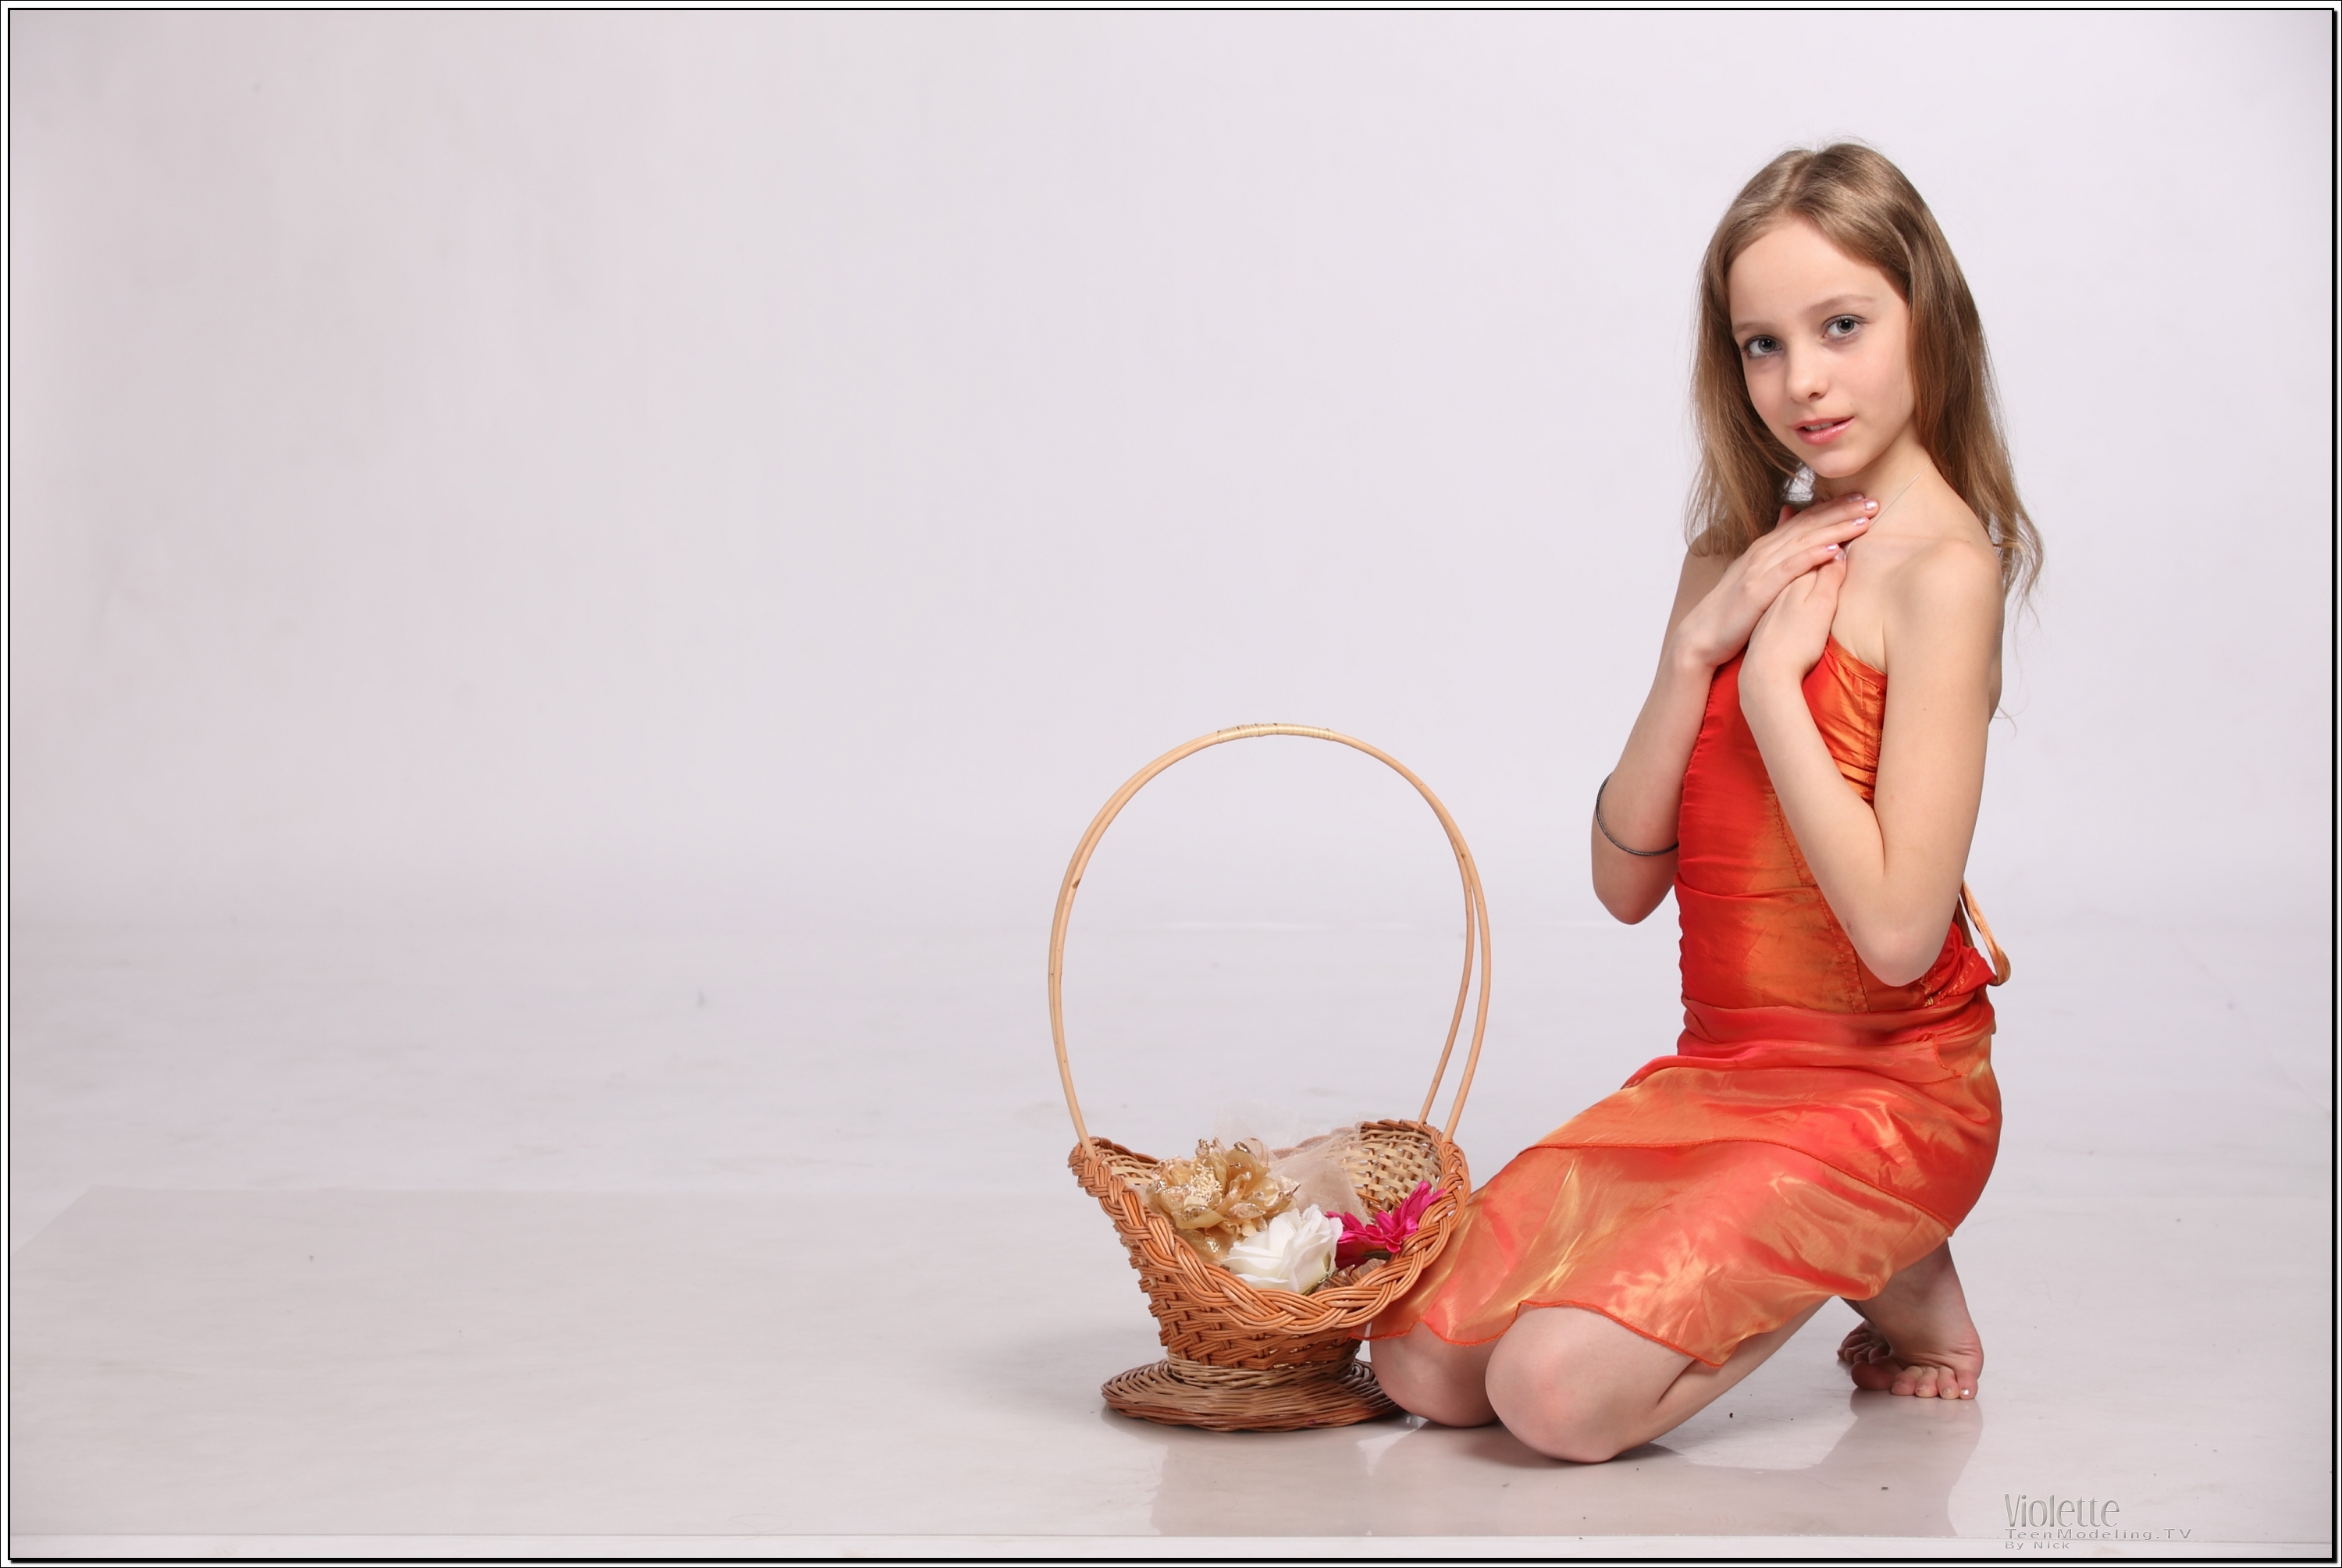 violette_model_orangesheer_teenmodeling_tv_067.jpg